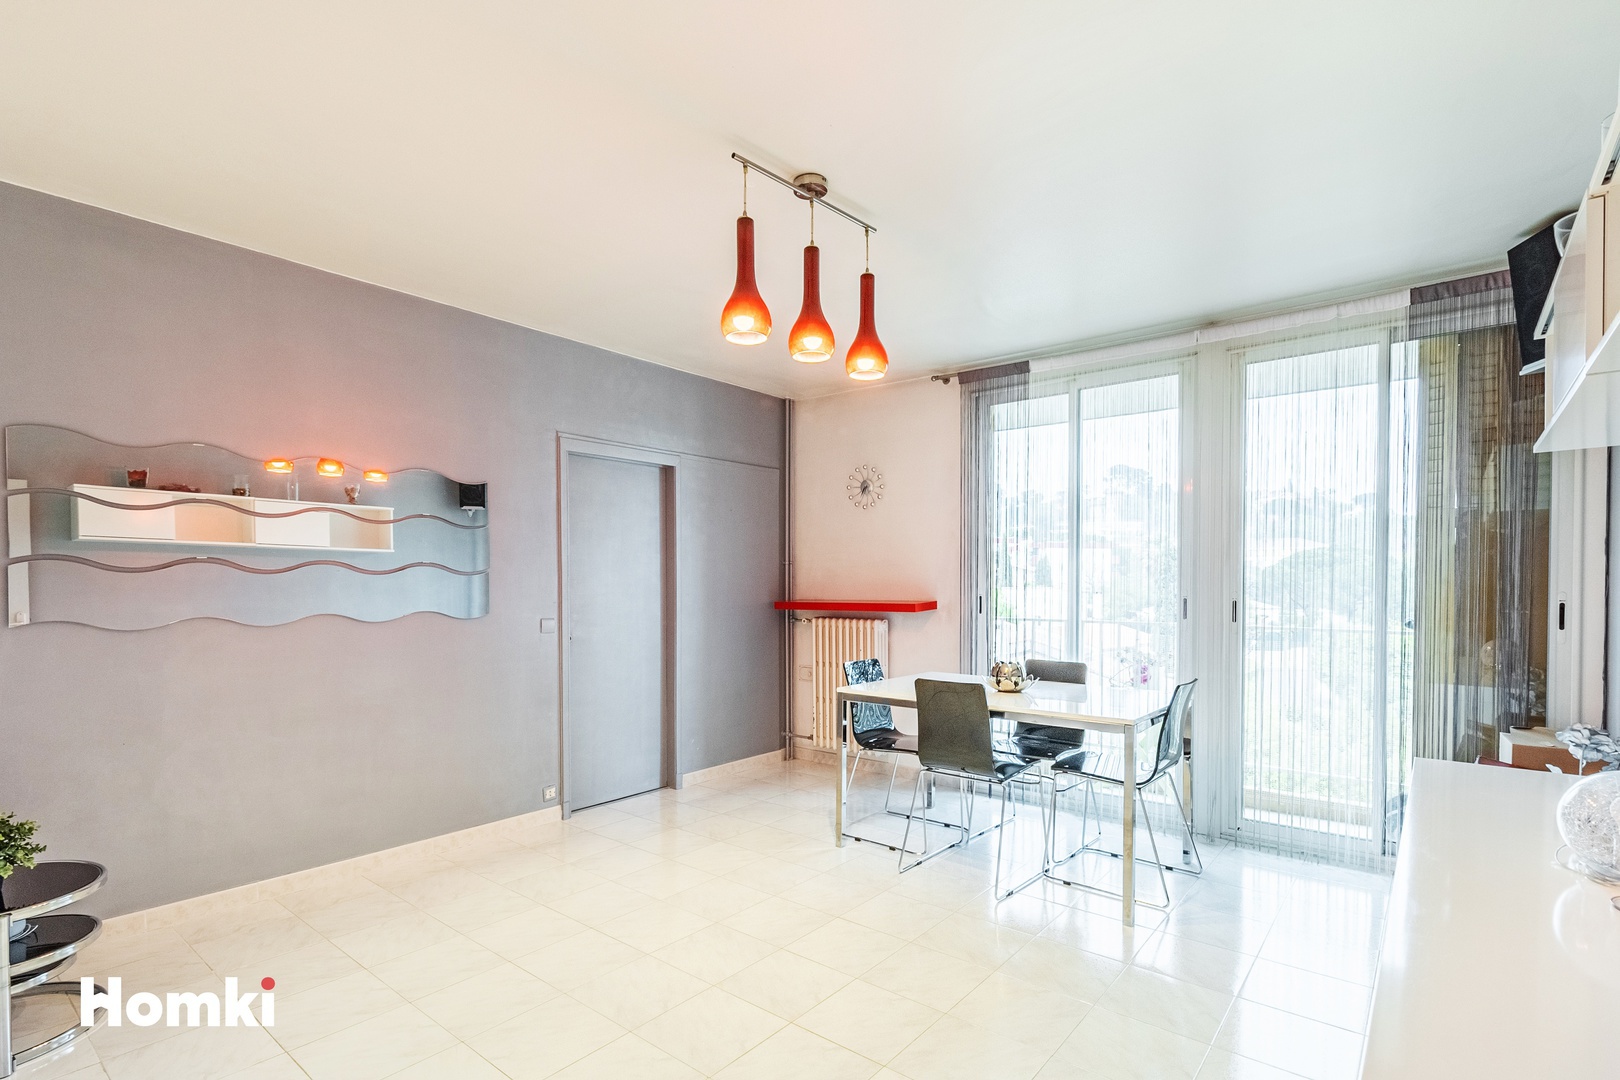 Homki - Vente Appartement  de 62.0 m² à Marseille 13012